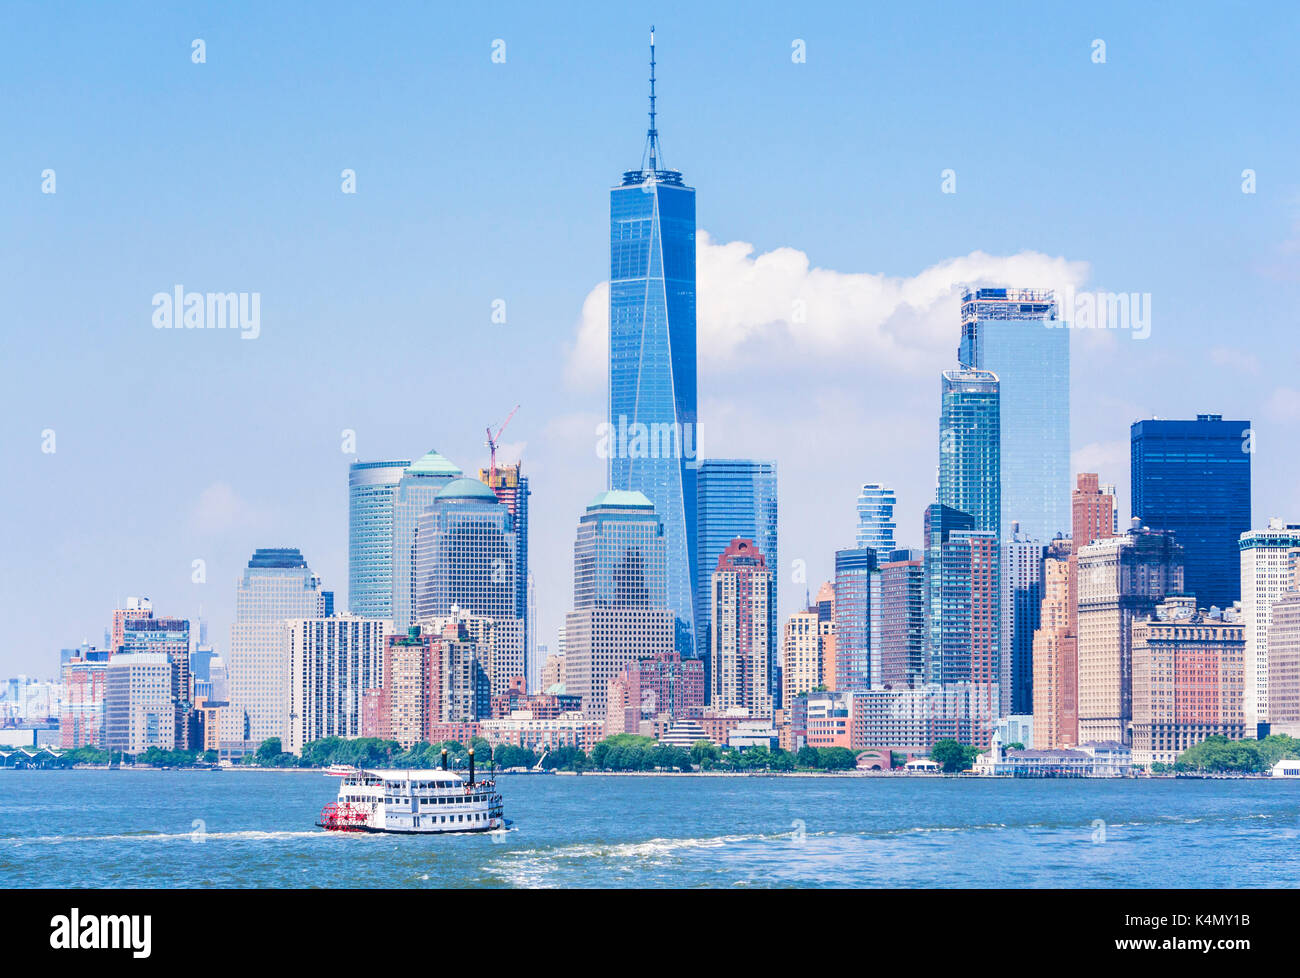 Lower Manhattan skyline, new york skyline, one world trade center tower, tour voile, Hudson River, New York, États-Unis d'Amérique, Amérique du Nord Banque D'Images